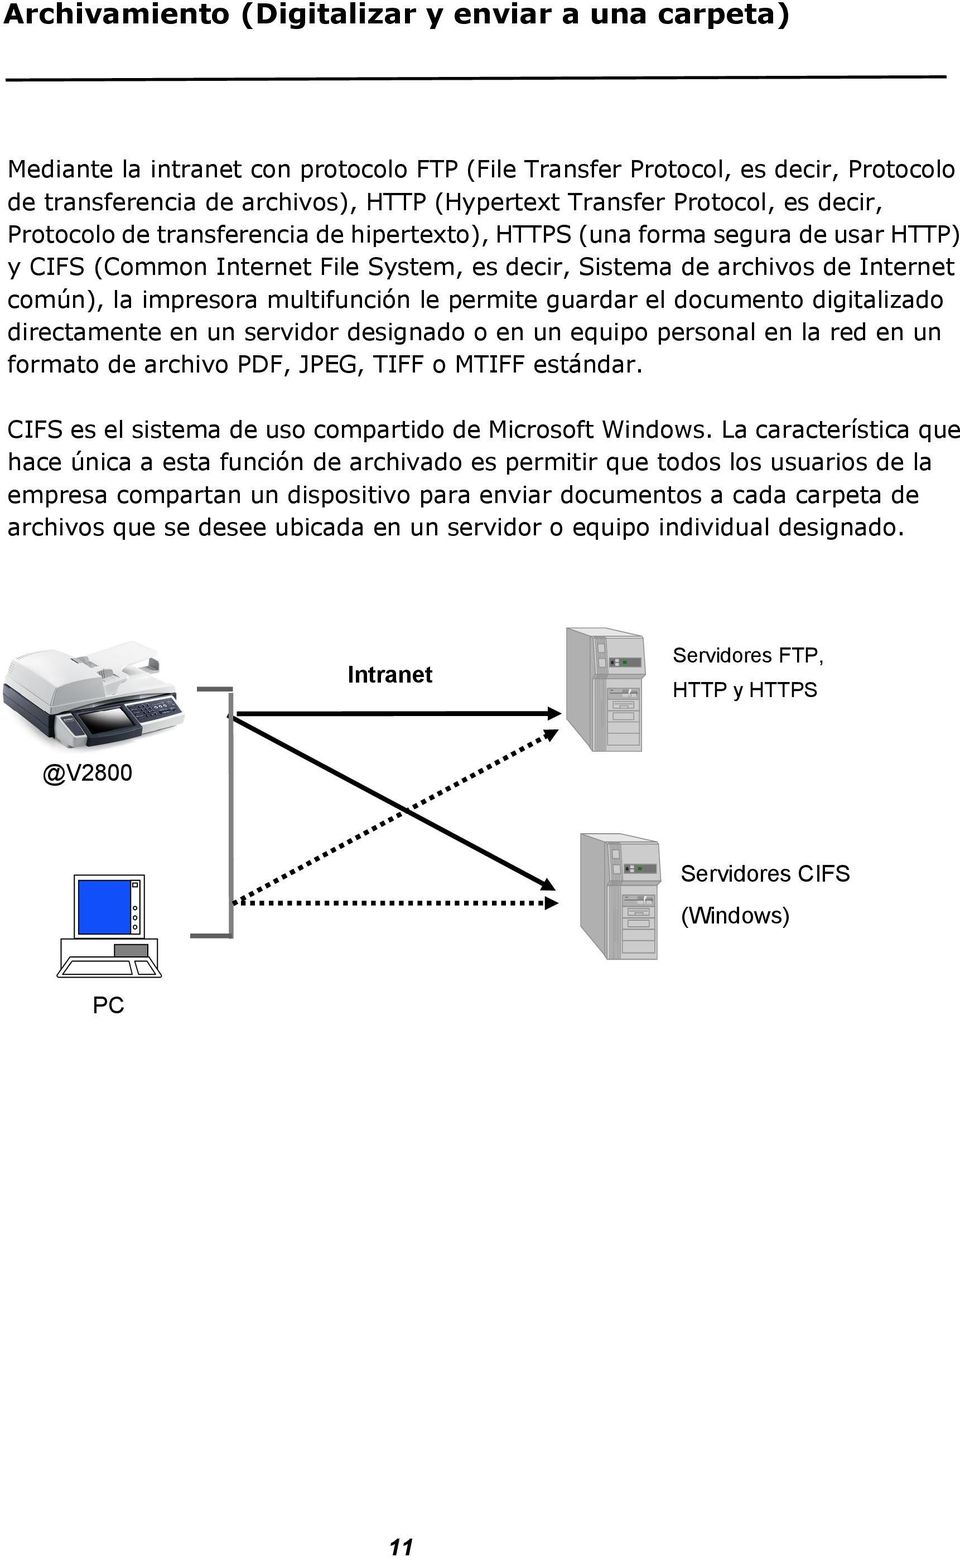 impresora multifunción le permite guardar el documento digitalizado directamente en un servidor designado o en un equipo personal en la red en un formato de archivo PDF, JPEG, TIFF o MTIFF estándar.